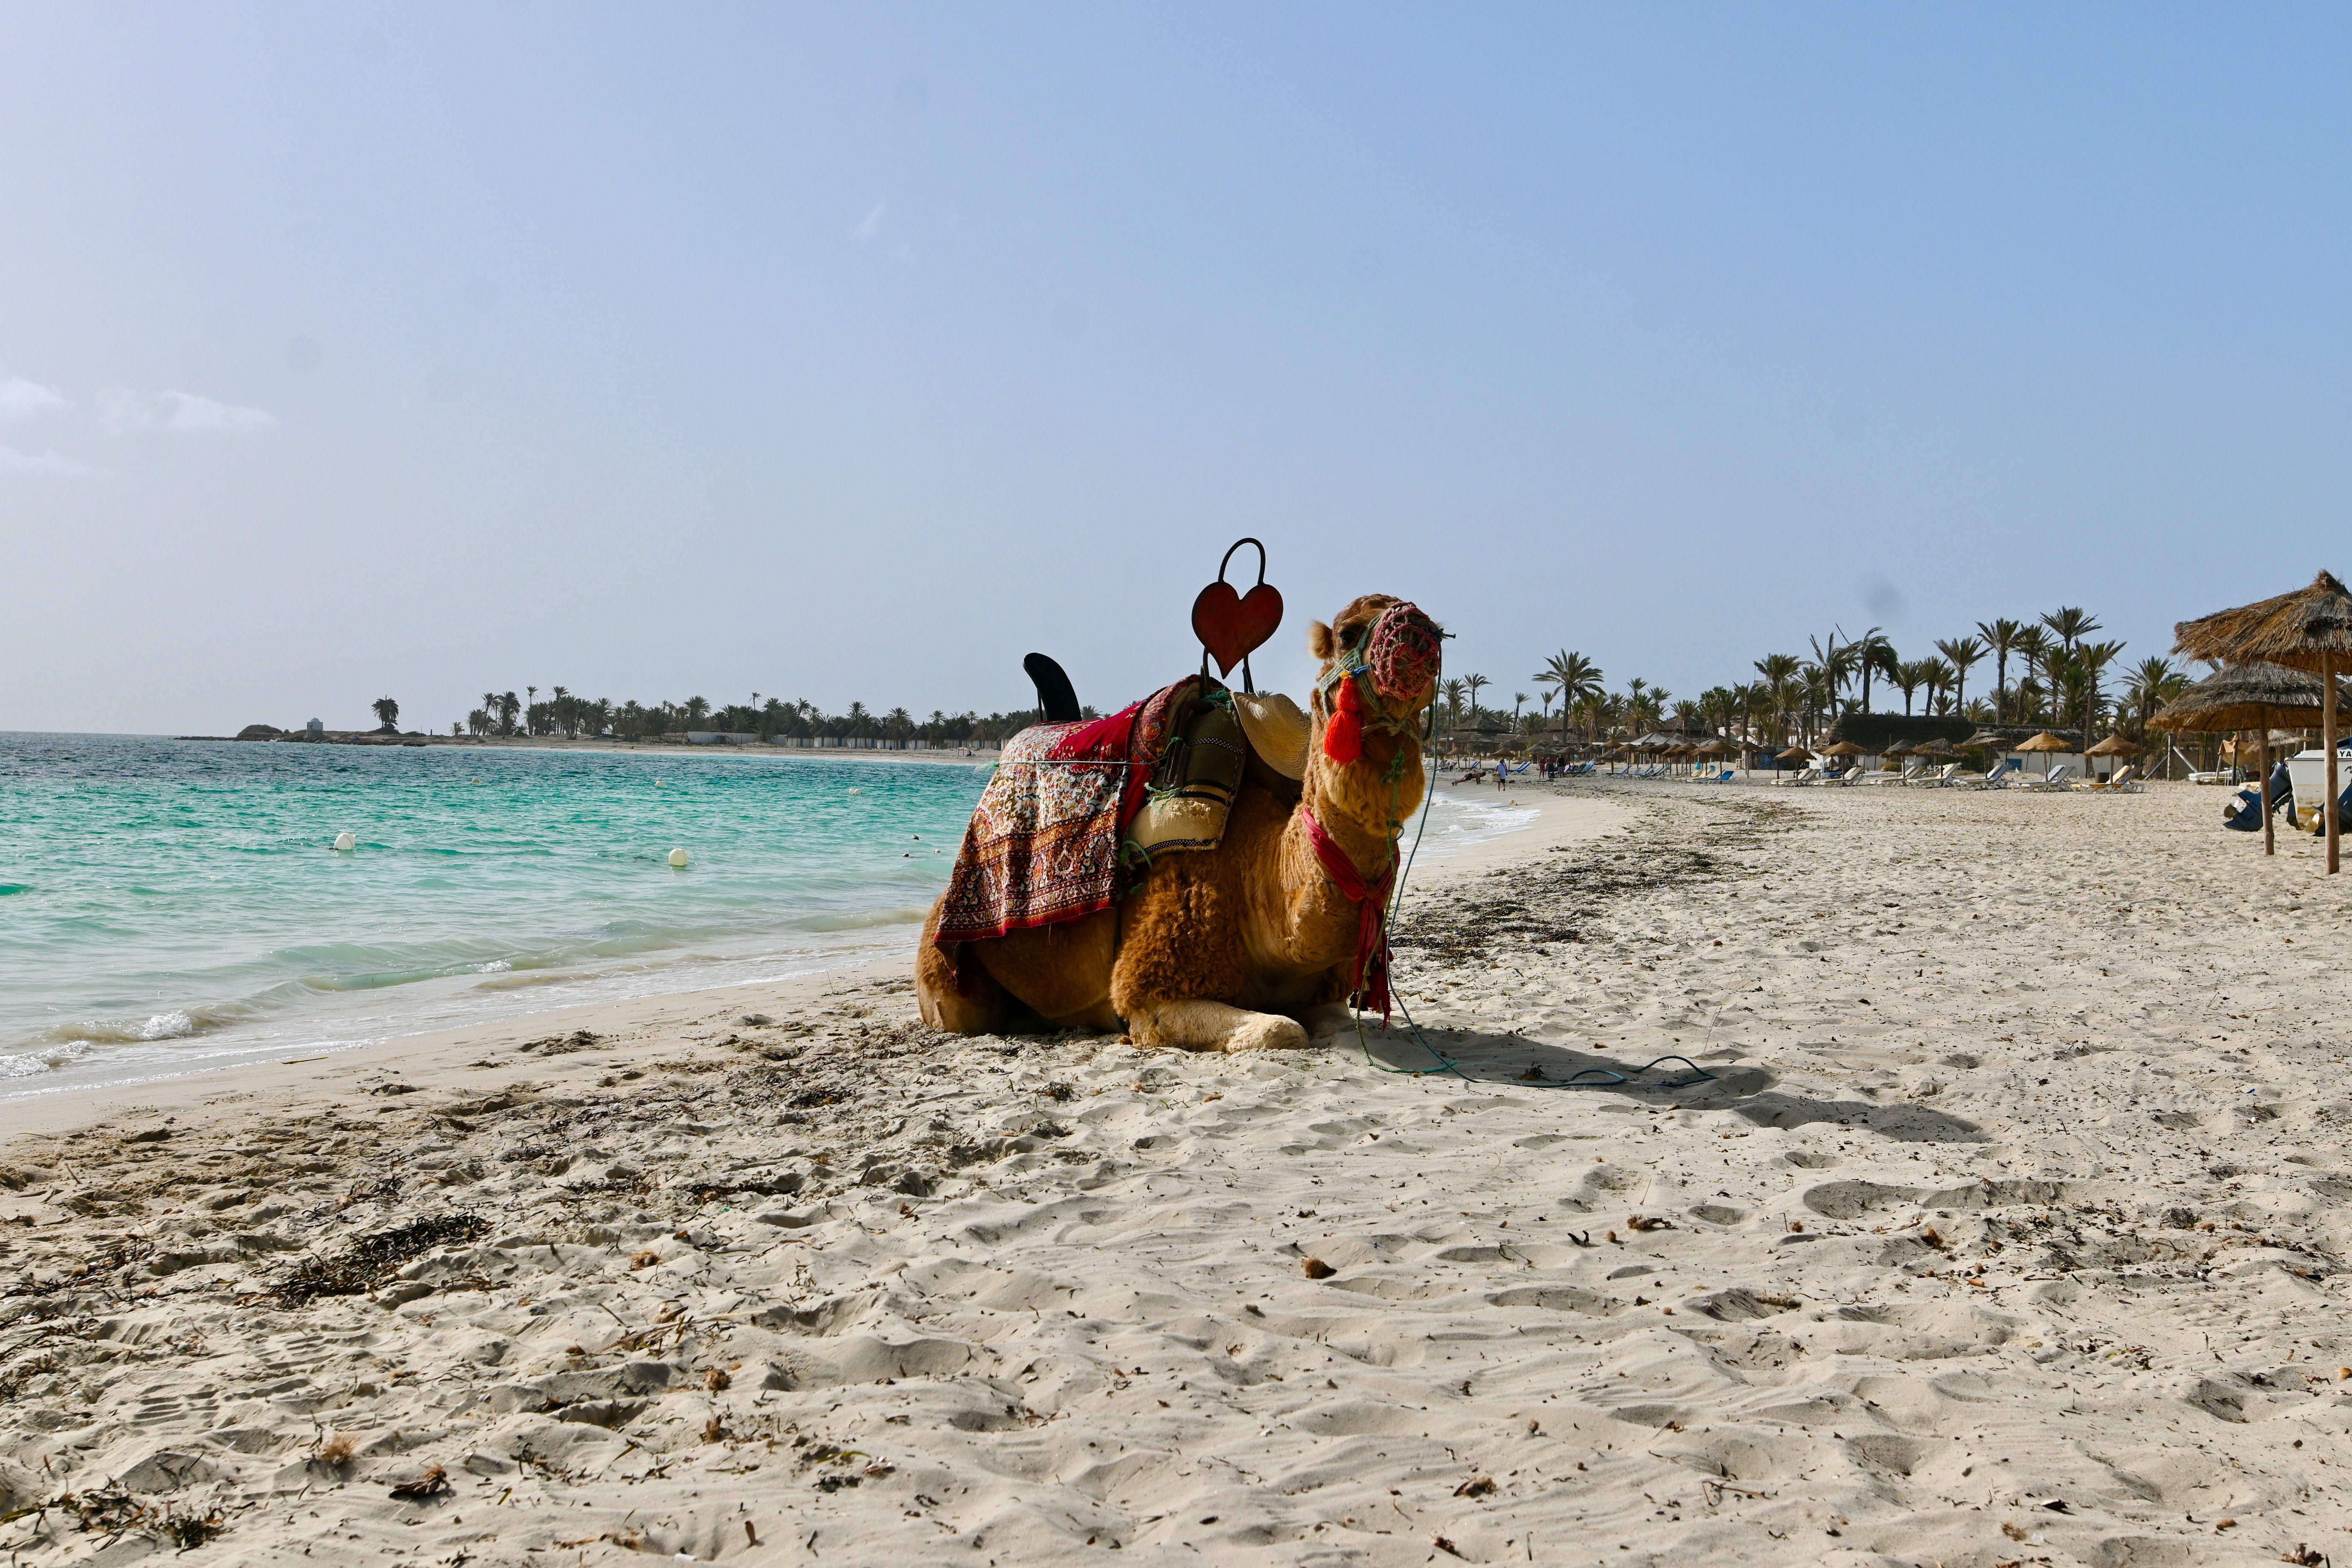 Tunesien for family - Tunesien mit Kindern - Kamel am Strand